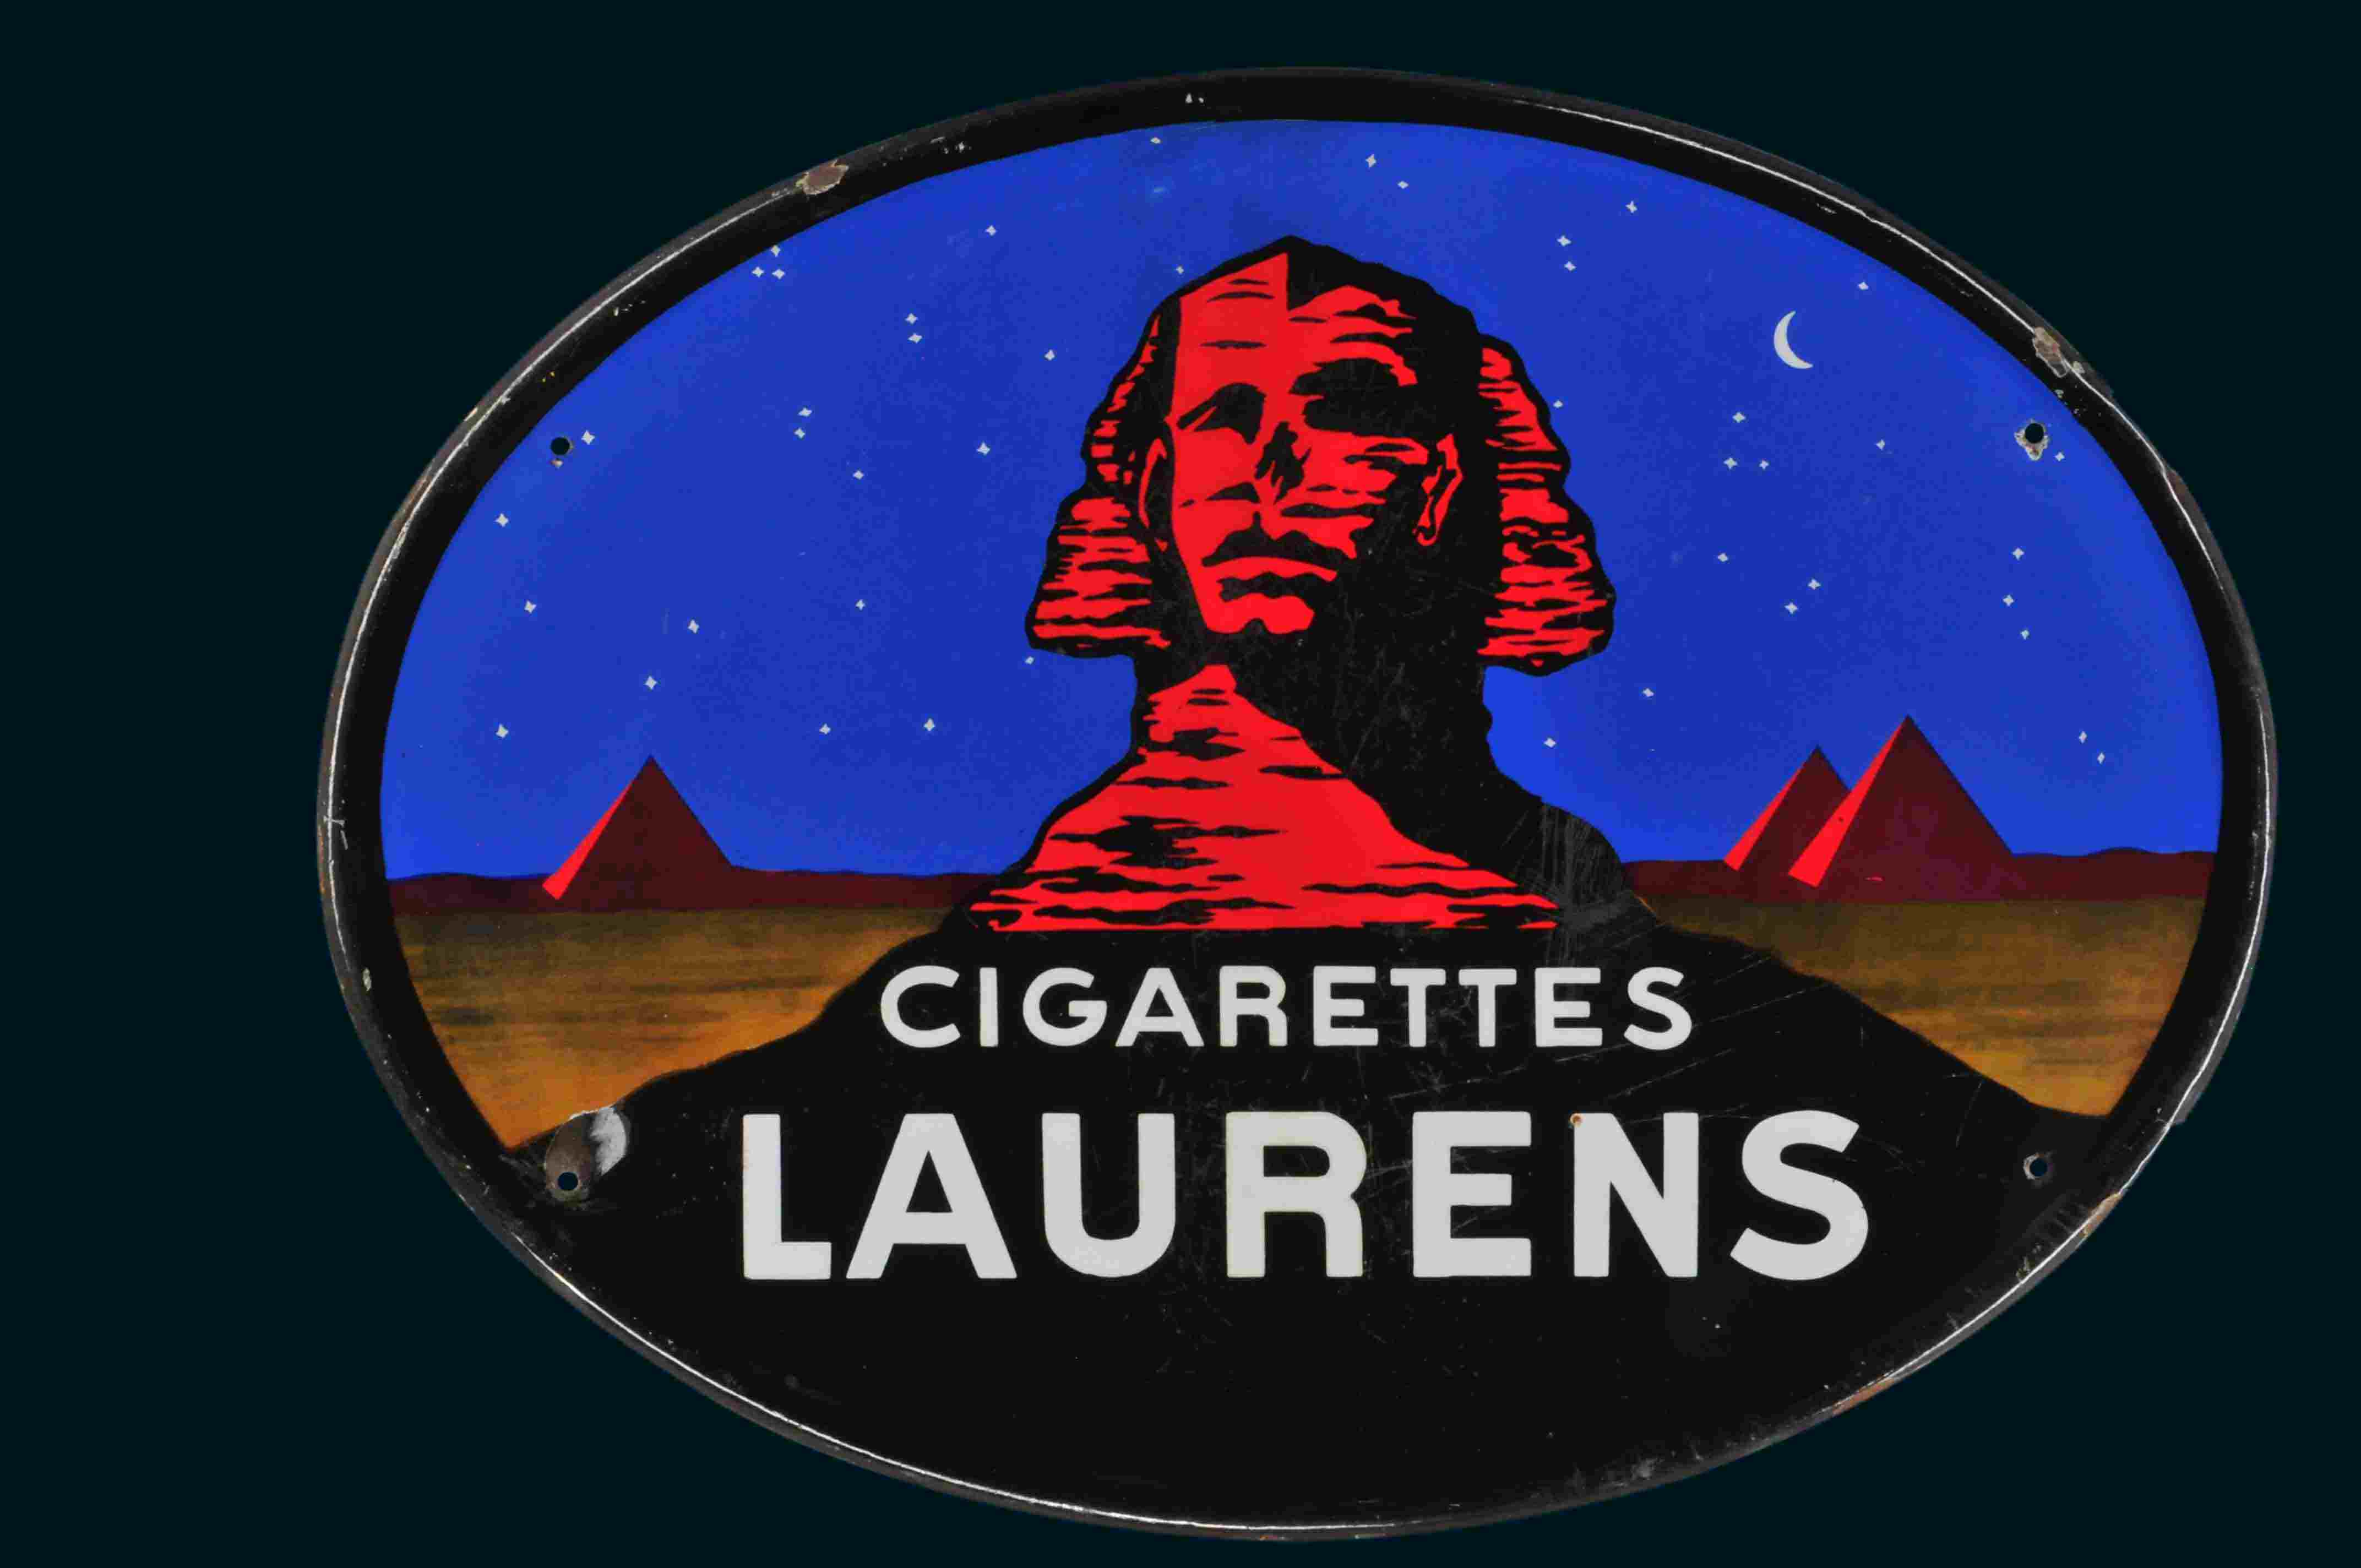 Laurens Cigarettes 